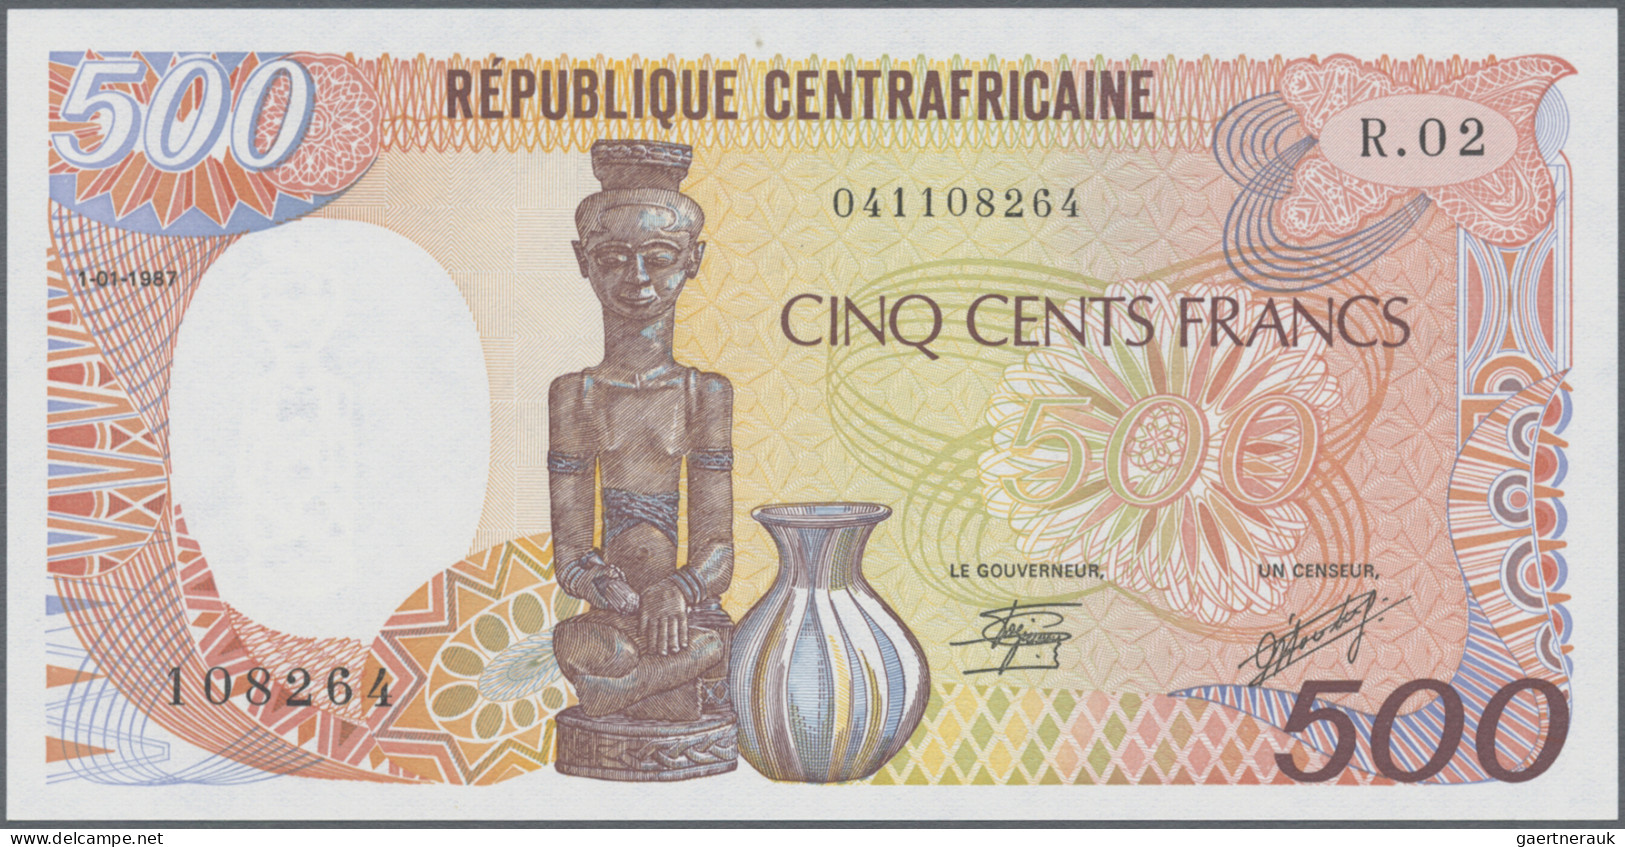 Central African Republic: Banque Des États De L'Afrique Centrale - République Ce - República Centroafricana